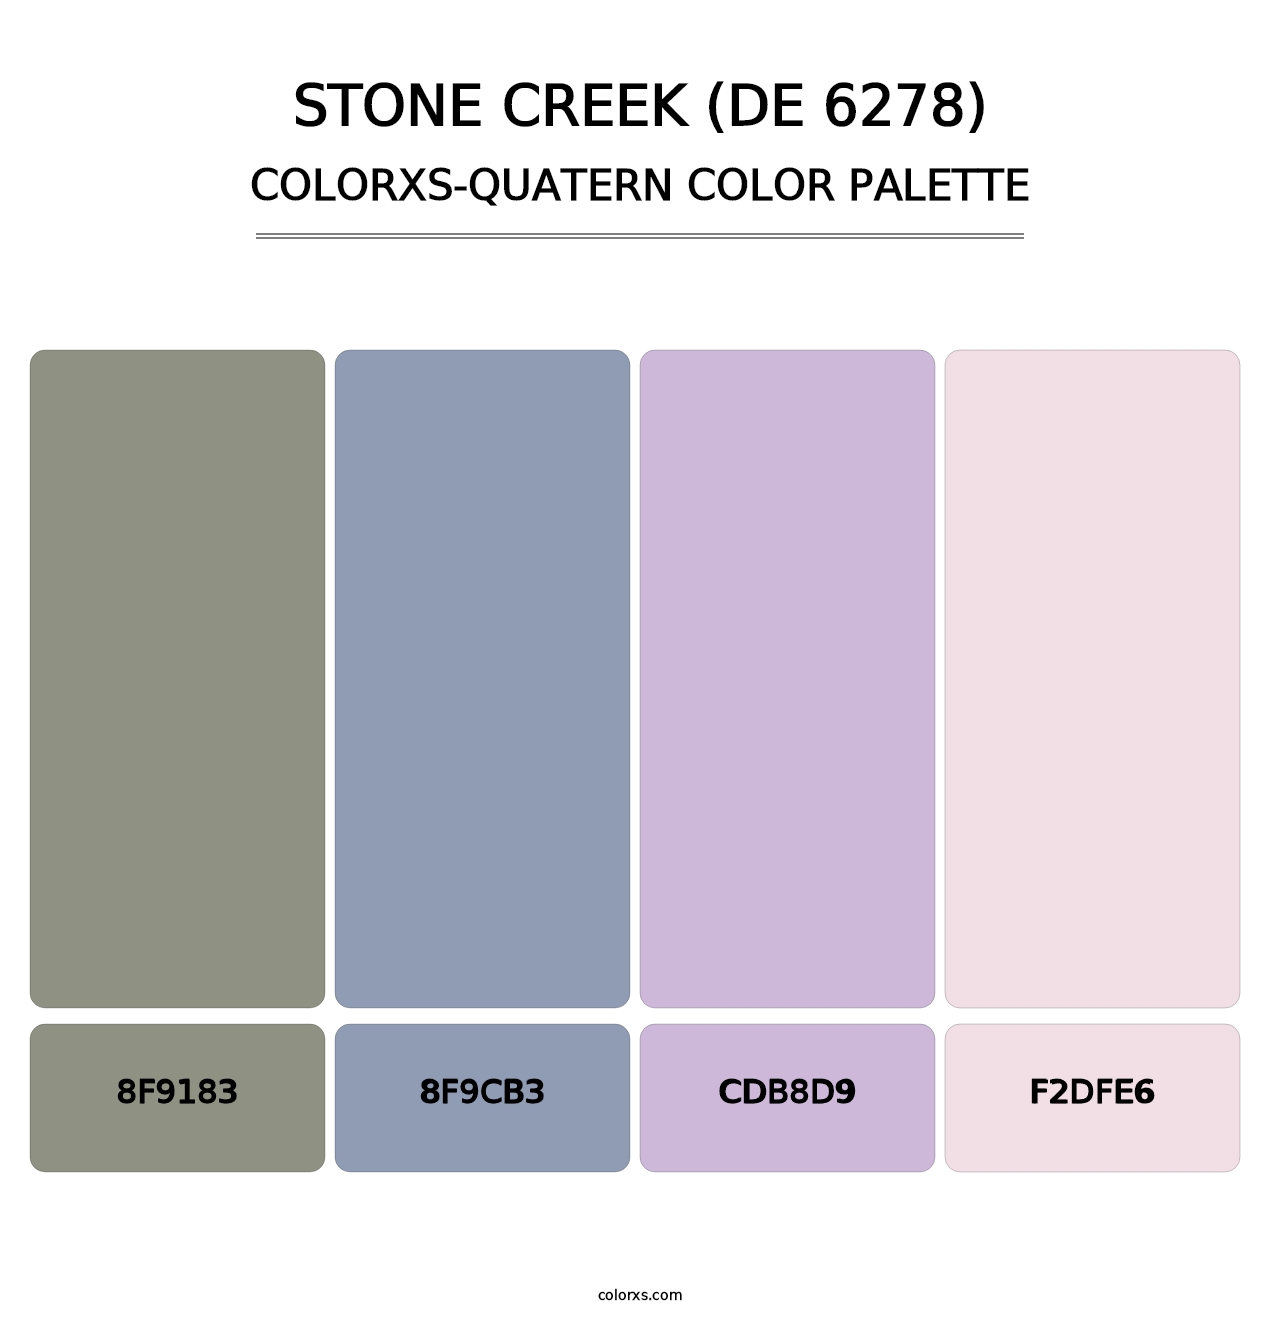 Stone Creek (DE 6278) - Colorxs Quatern Palette